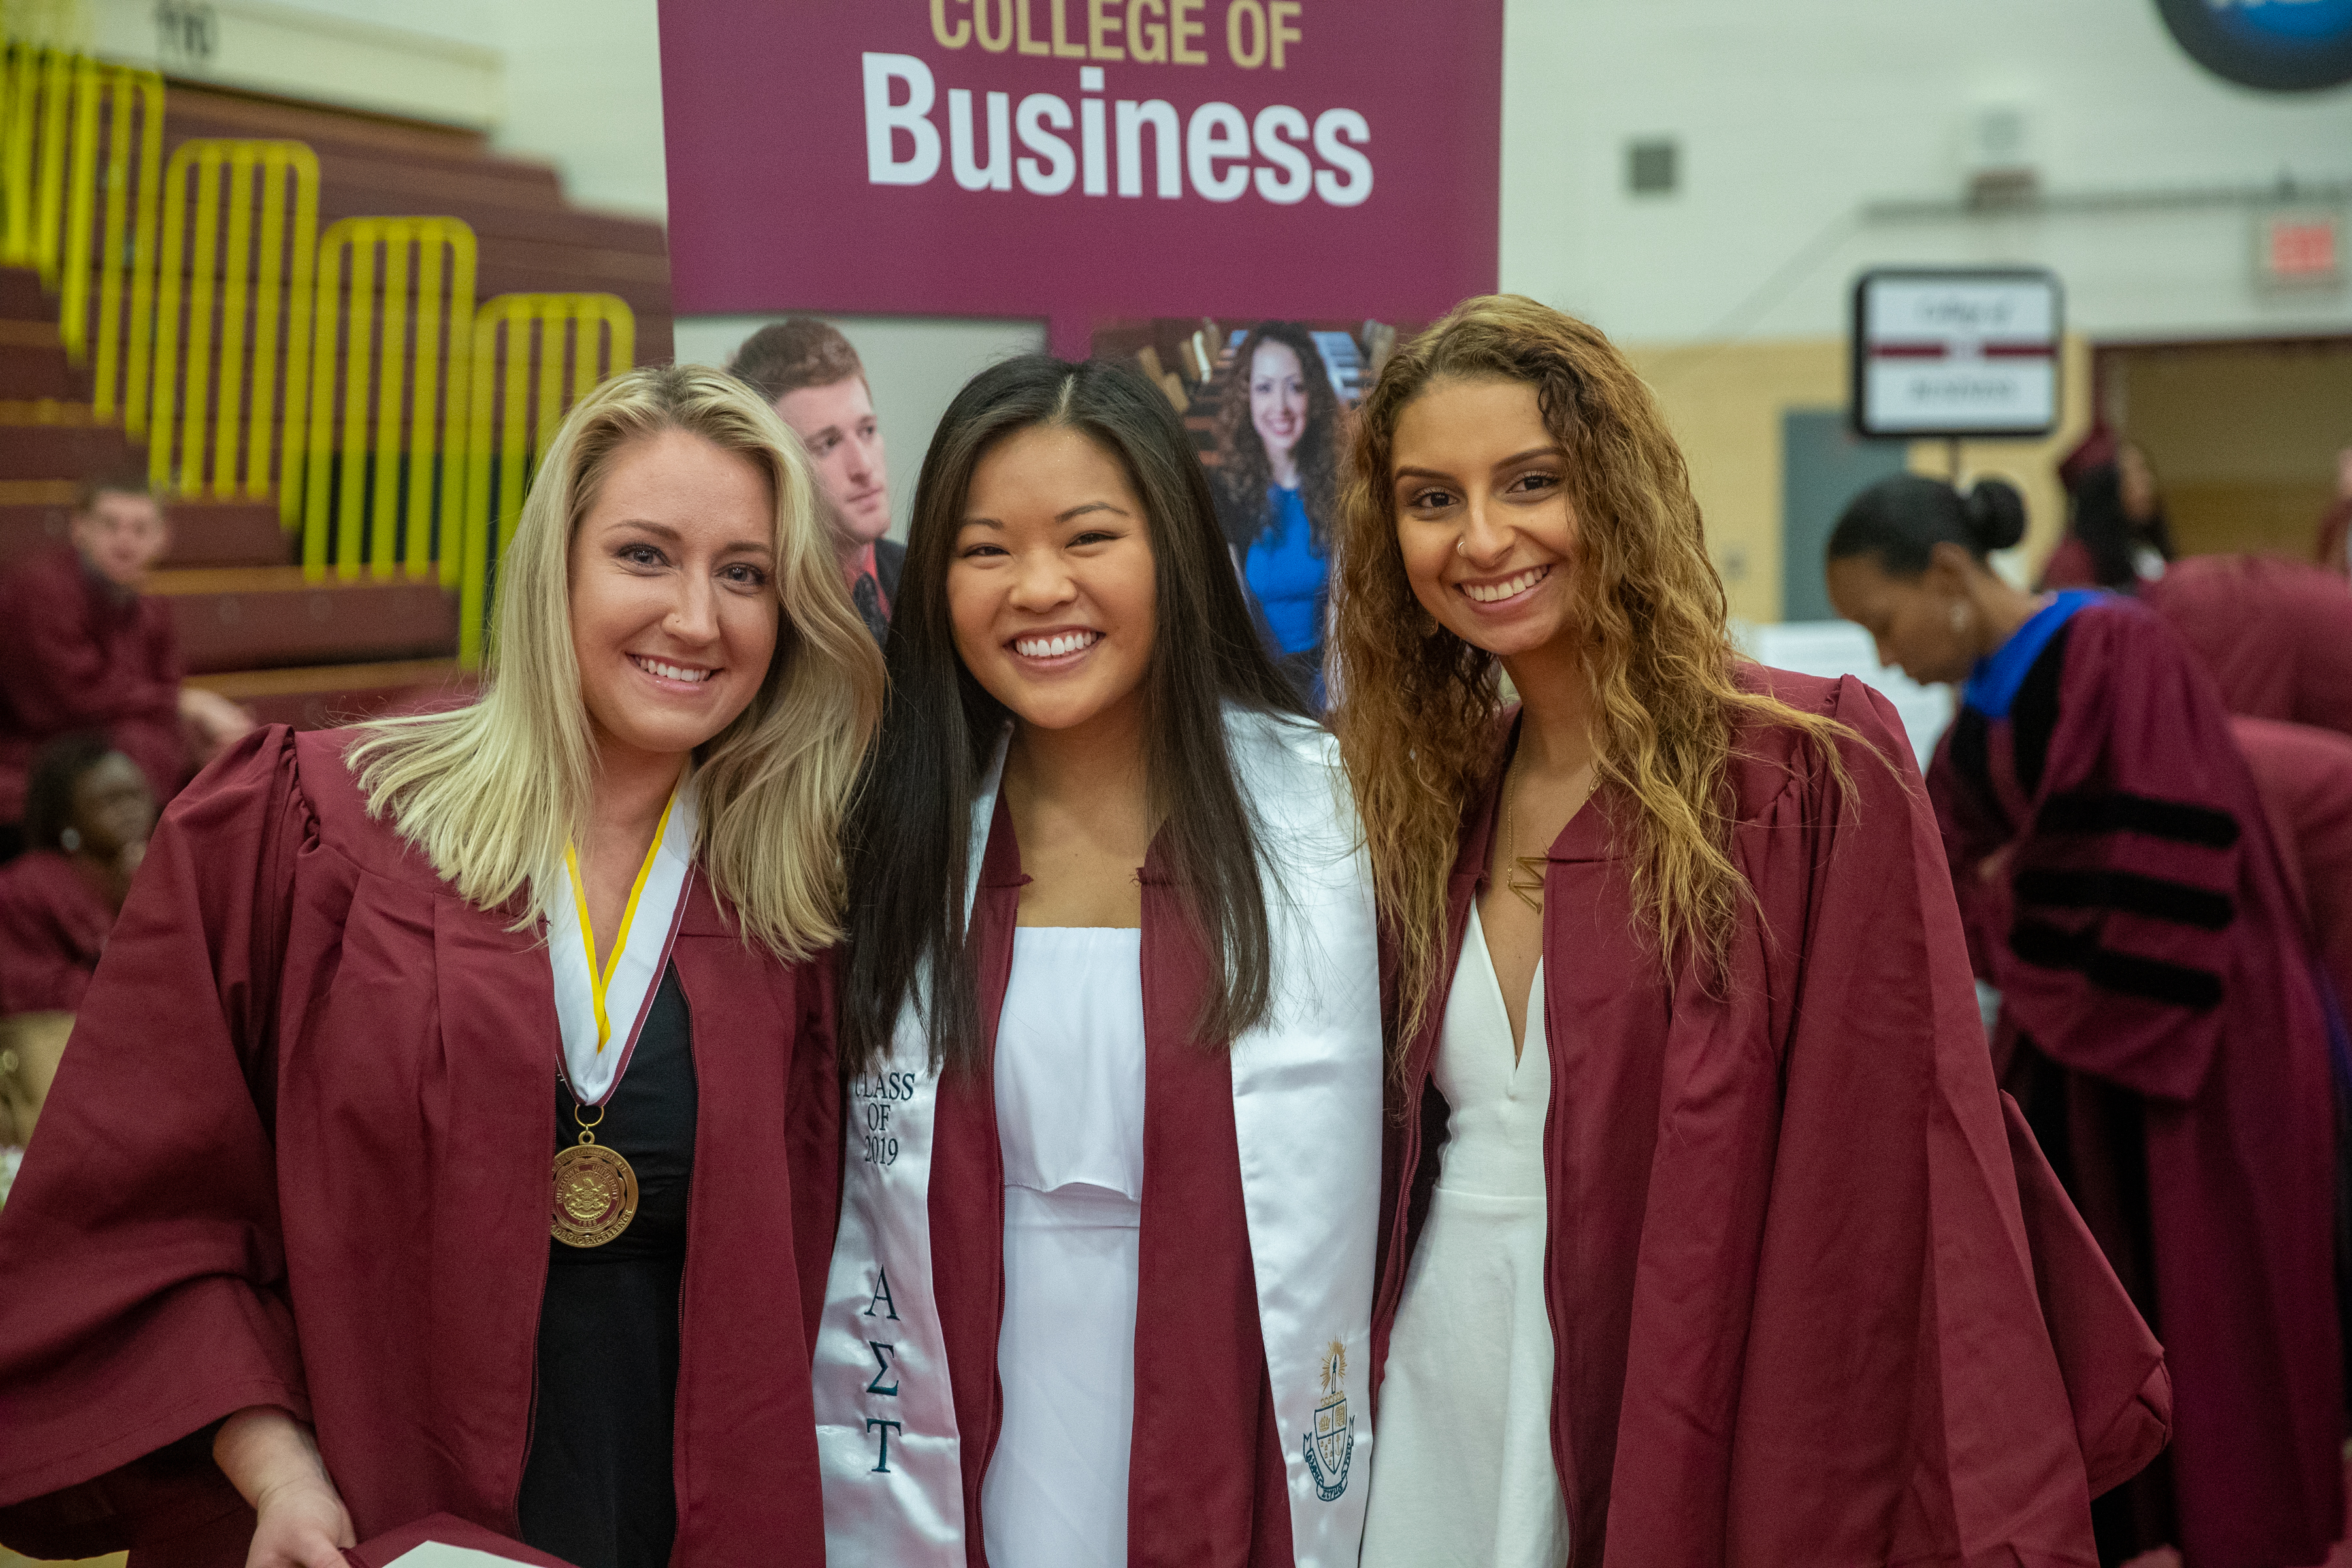 3 female students in graduation regalia smiling